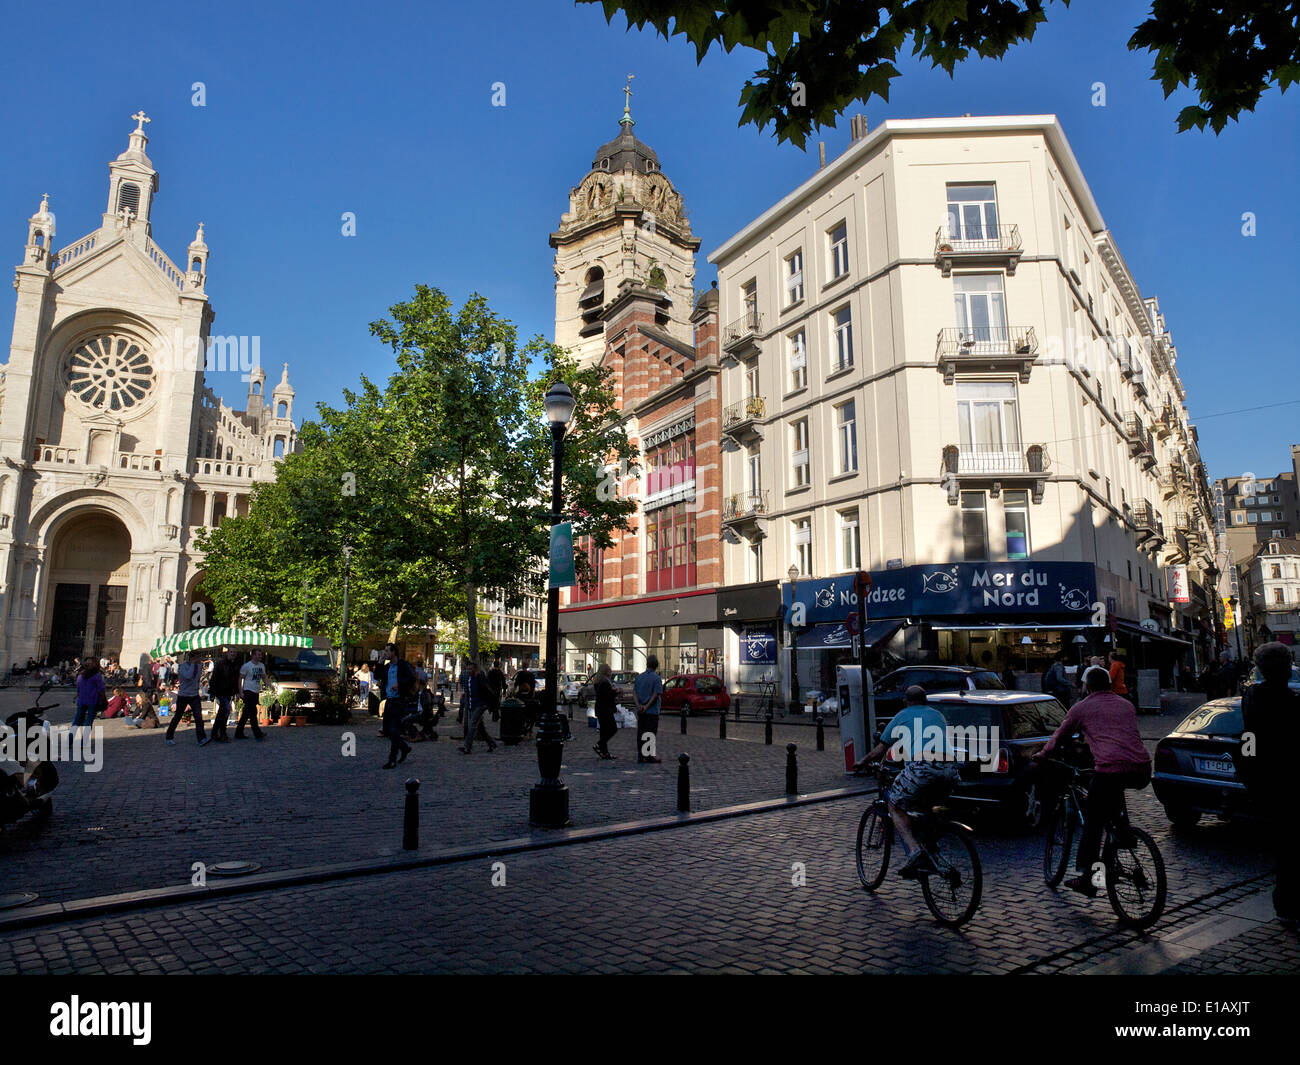 Die St. Katelijne-Platz im Zentrum von Brüssel mit dem berühmten Mer du Nord / Noordzee Fischhändler. Stockfoto